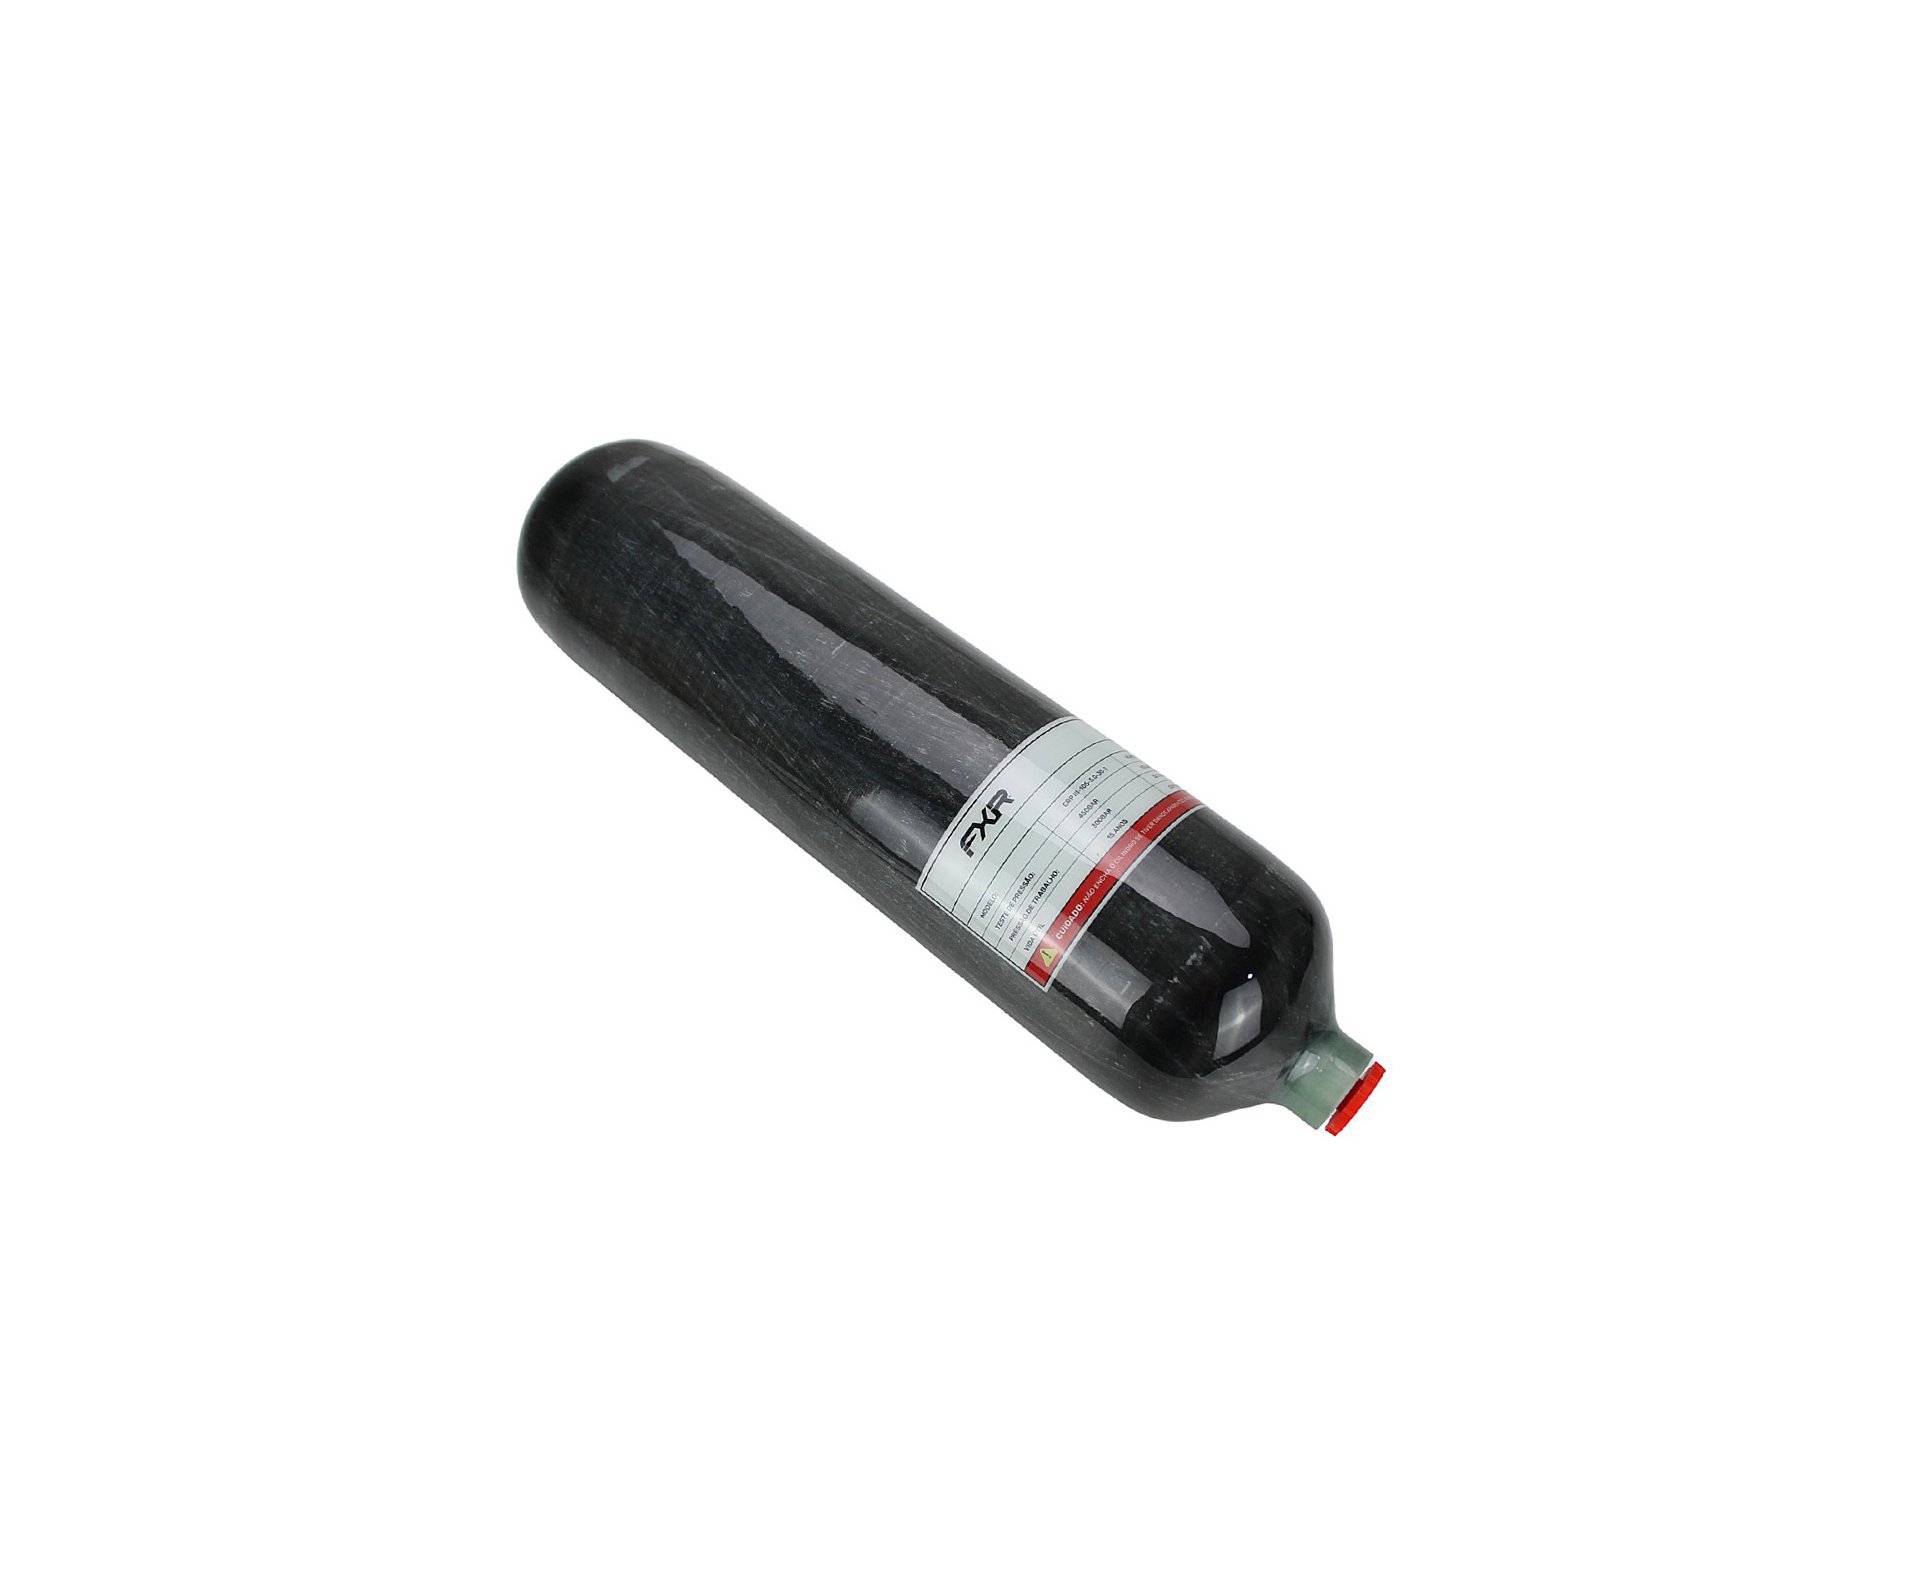 Cilindro Scuba 3L Fibra Carbono 300bar FXR + Estação de recarga DIN + Válvula Para Cilindro Scuba padrão DIN